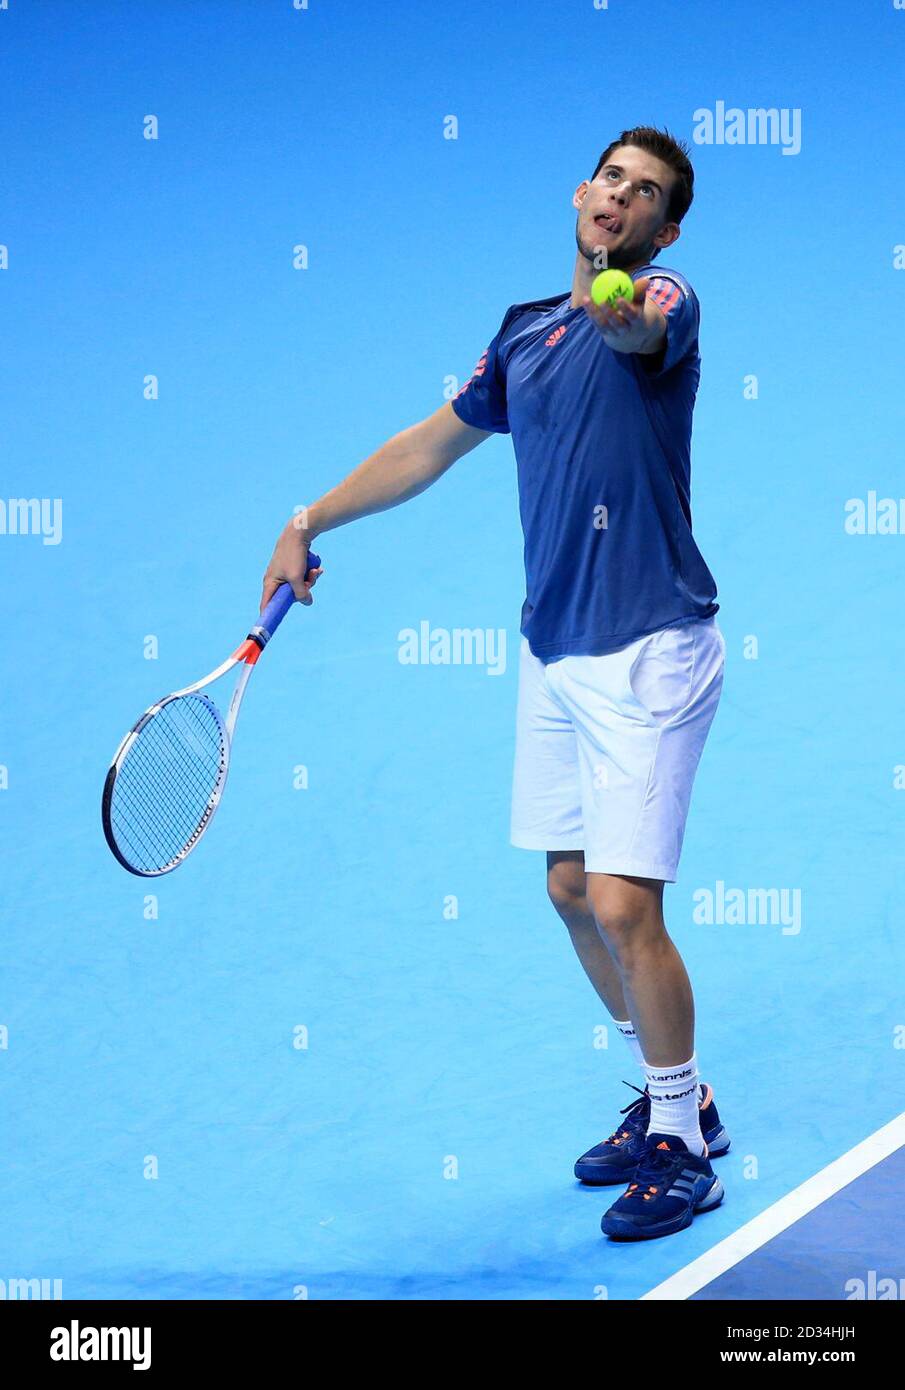 Dominic Thiem d'Autriche sert contre le canadien Milos Raonic pendant la cinquième journée des finales du Barclays ATP World Tour à l'O2, Londres. Banque D'Images